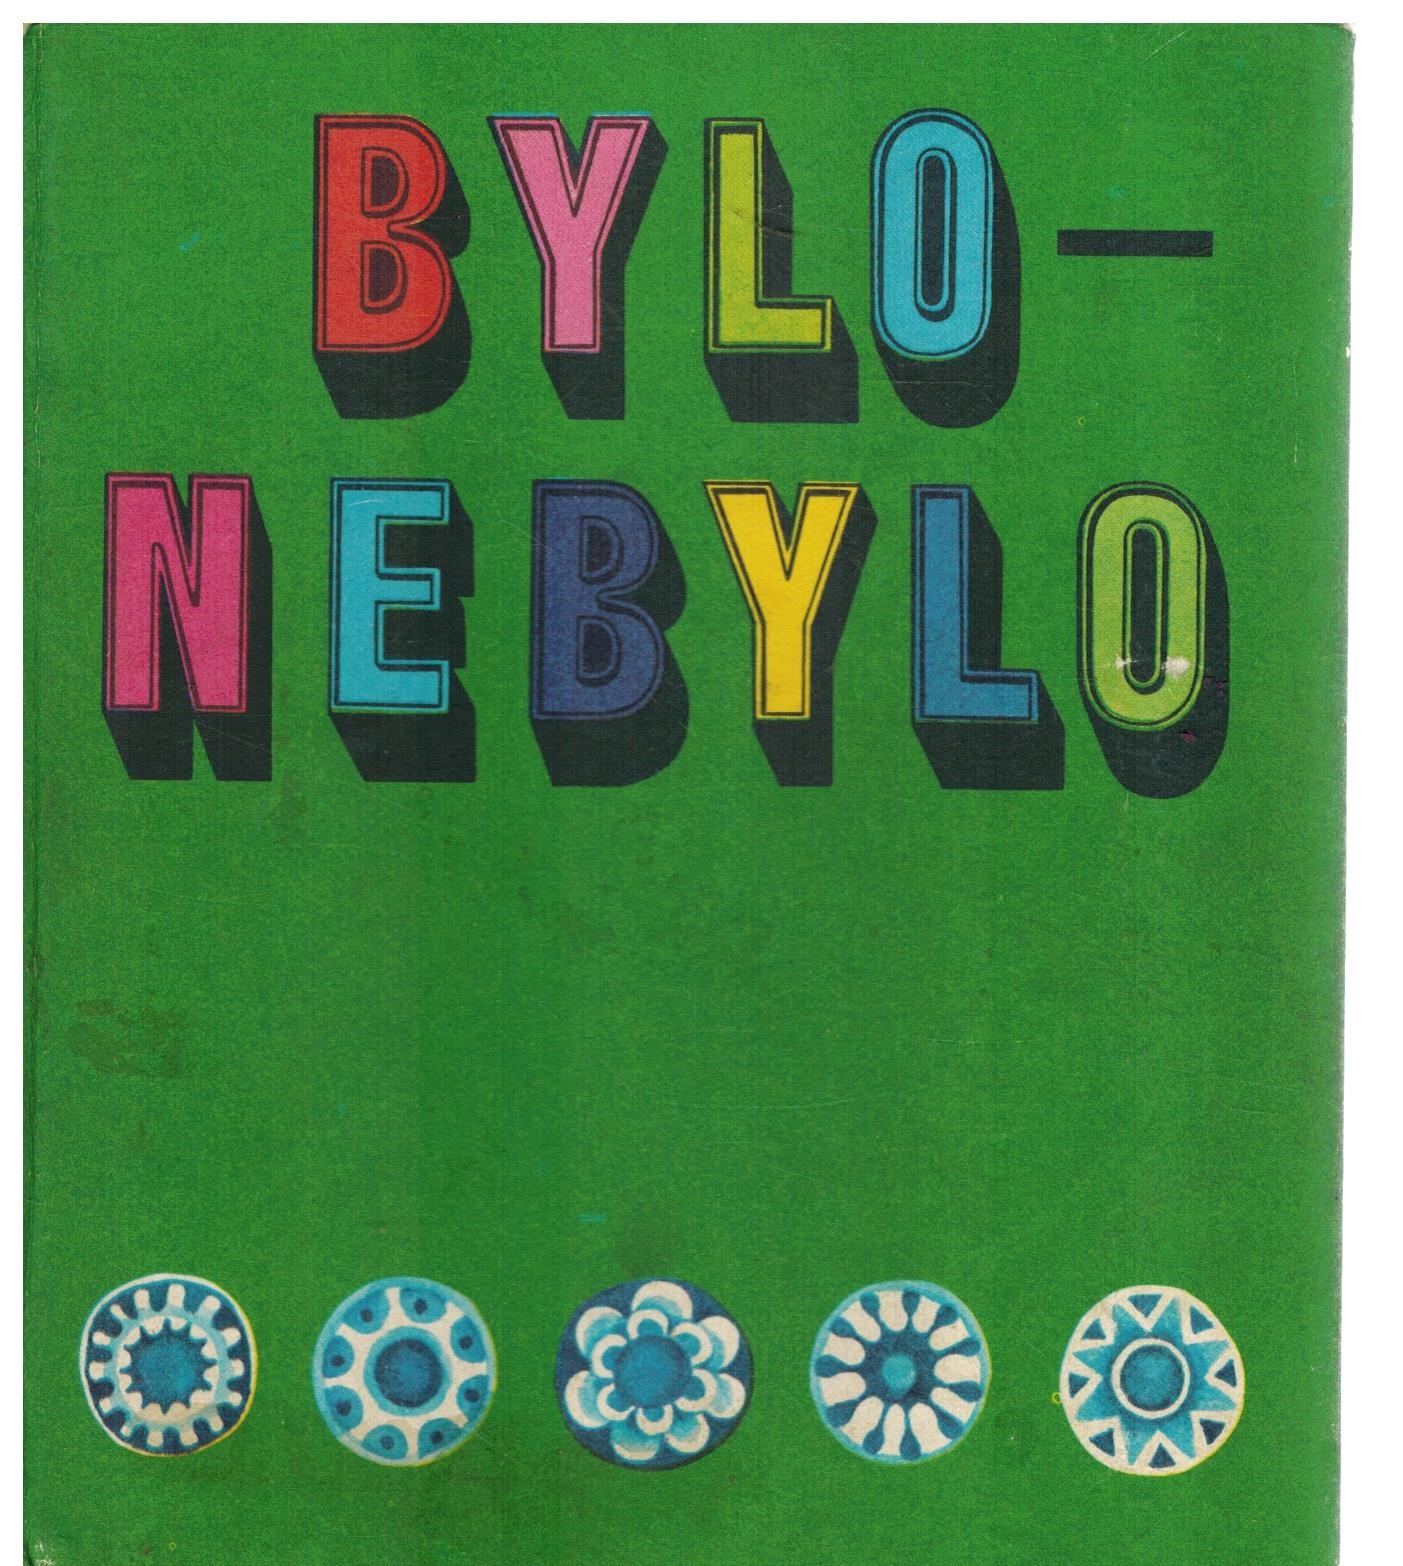 BYLO - NEBYLO